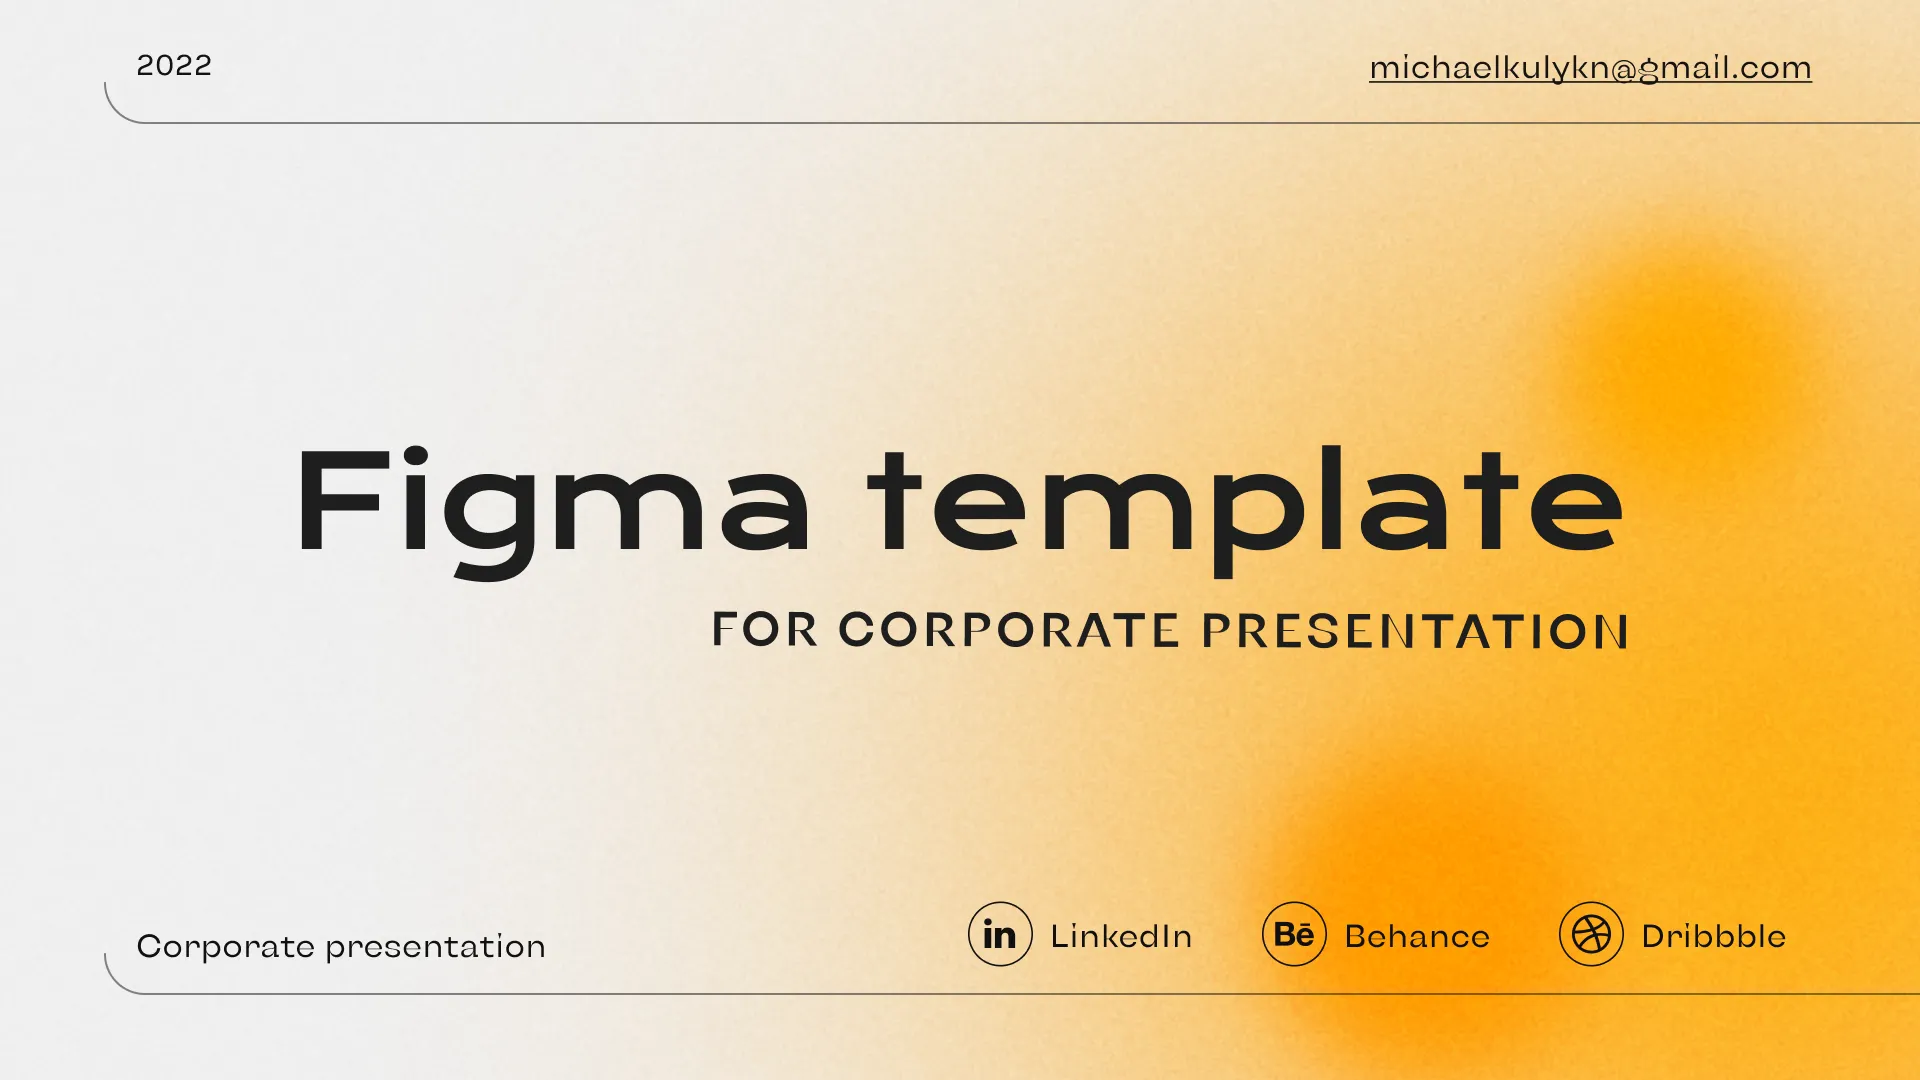 Corporate presentation template